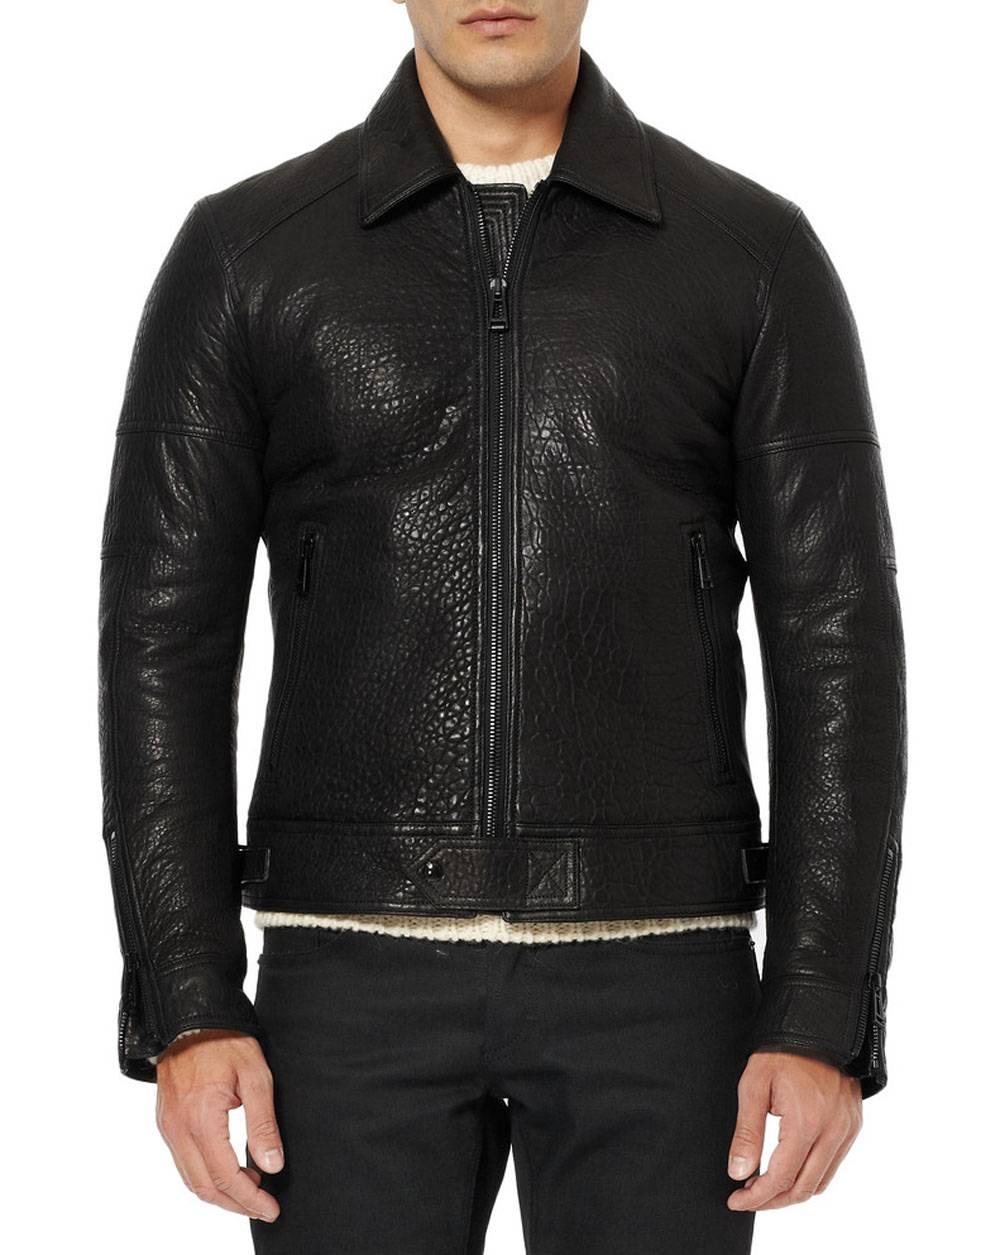 New BELSTAFF *MARSHE* Black Leather Jacket
Italian Sizes Available 48 - US 38 

George Elliot once said, 